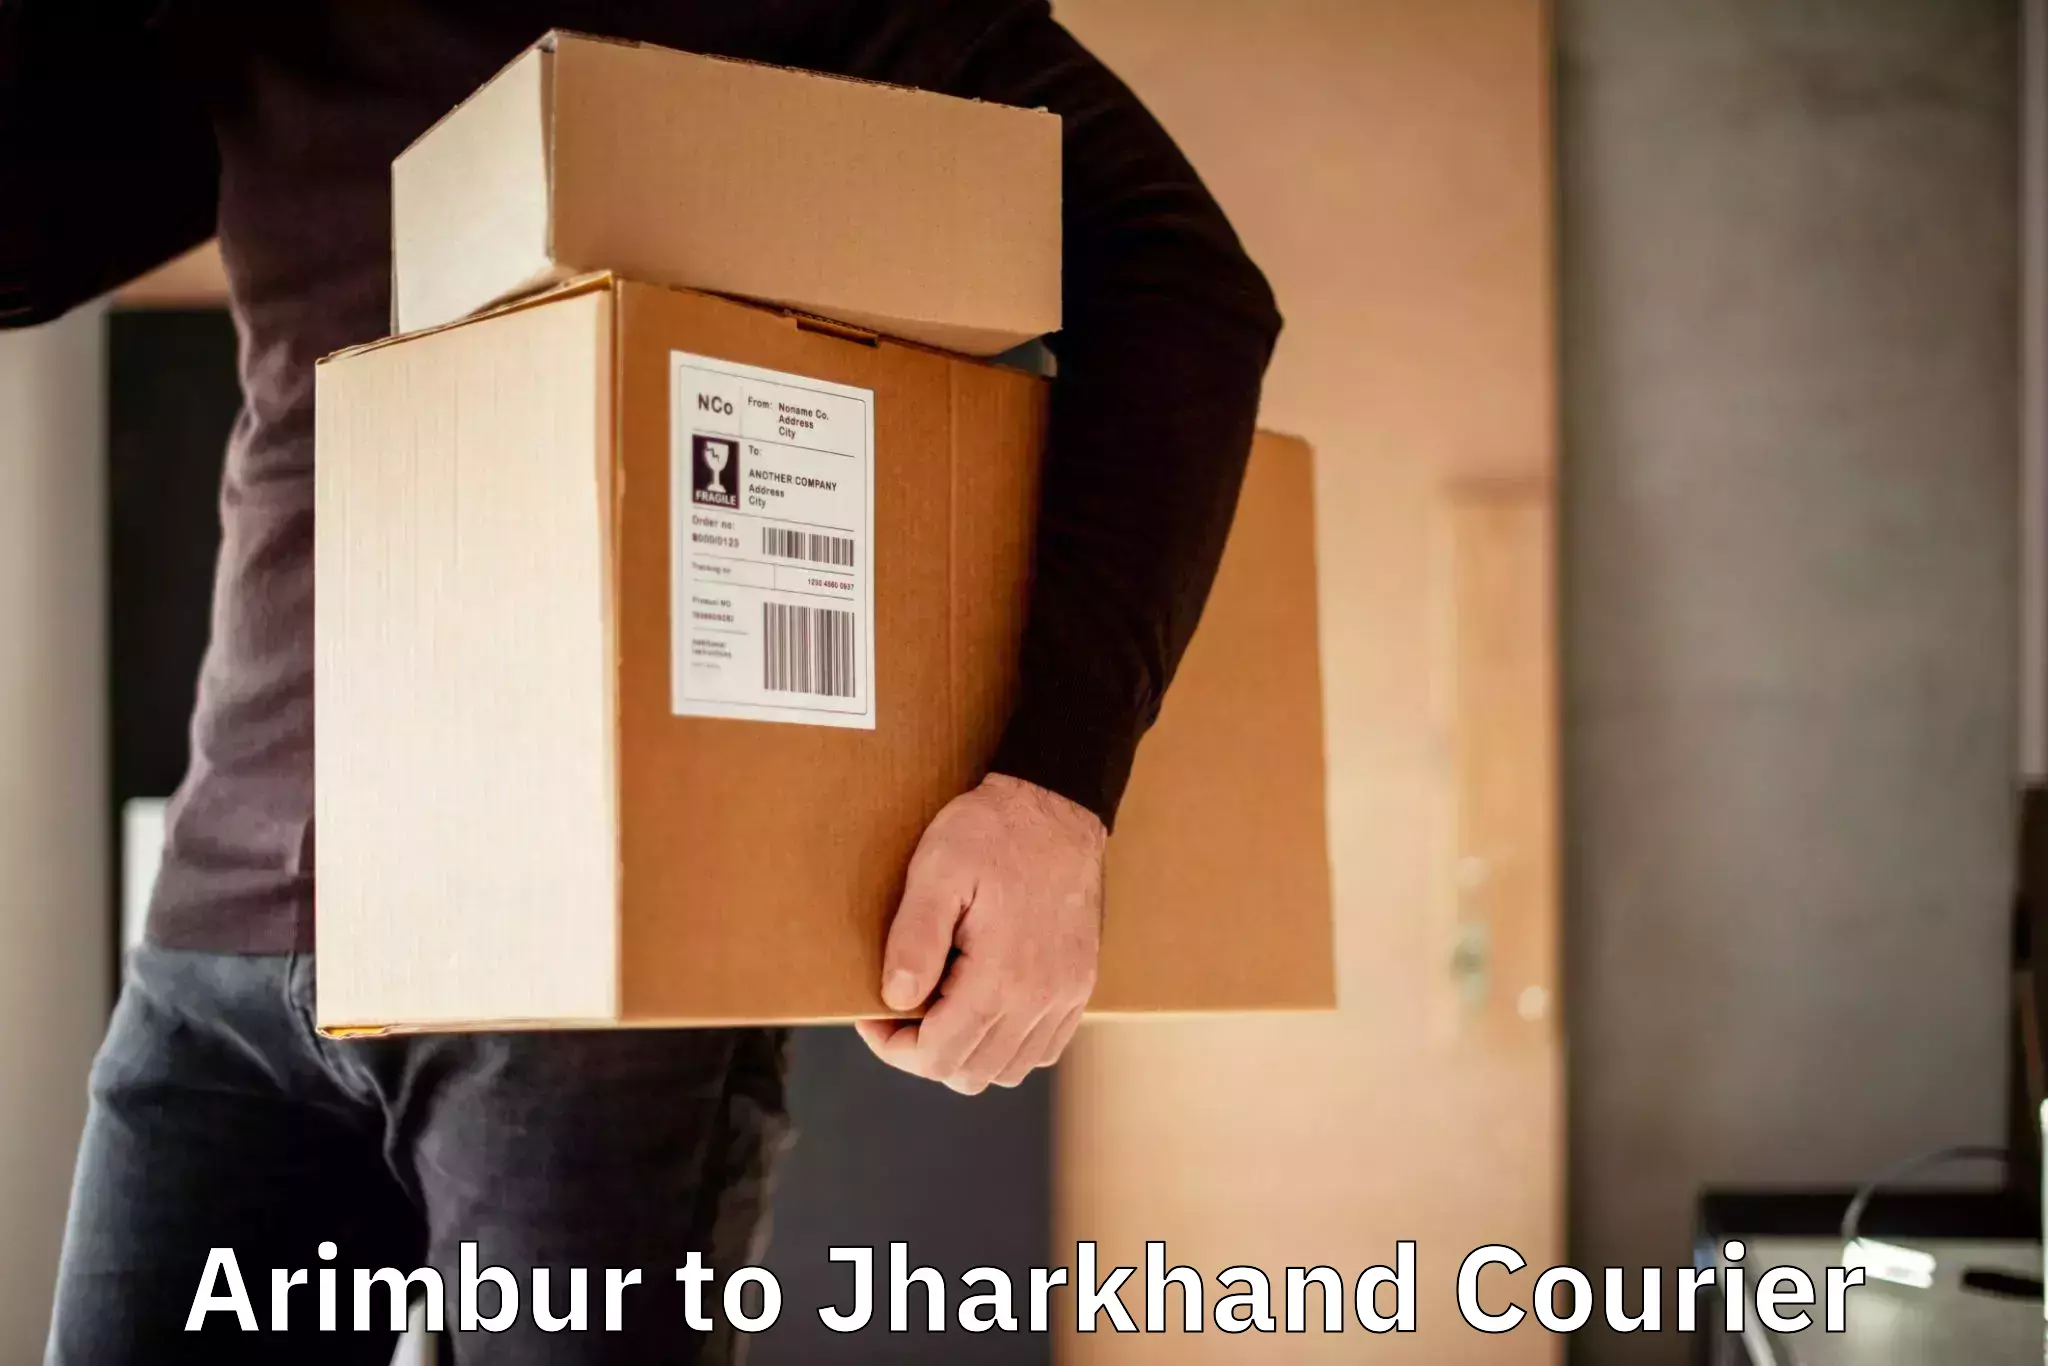 Express courier facilities Arimbur to IIT Dhanbad